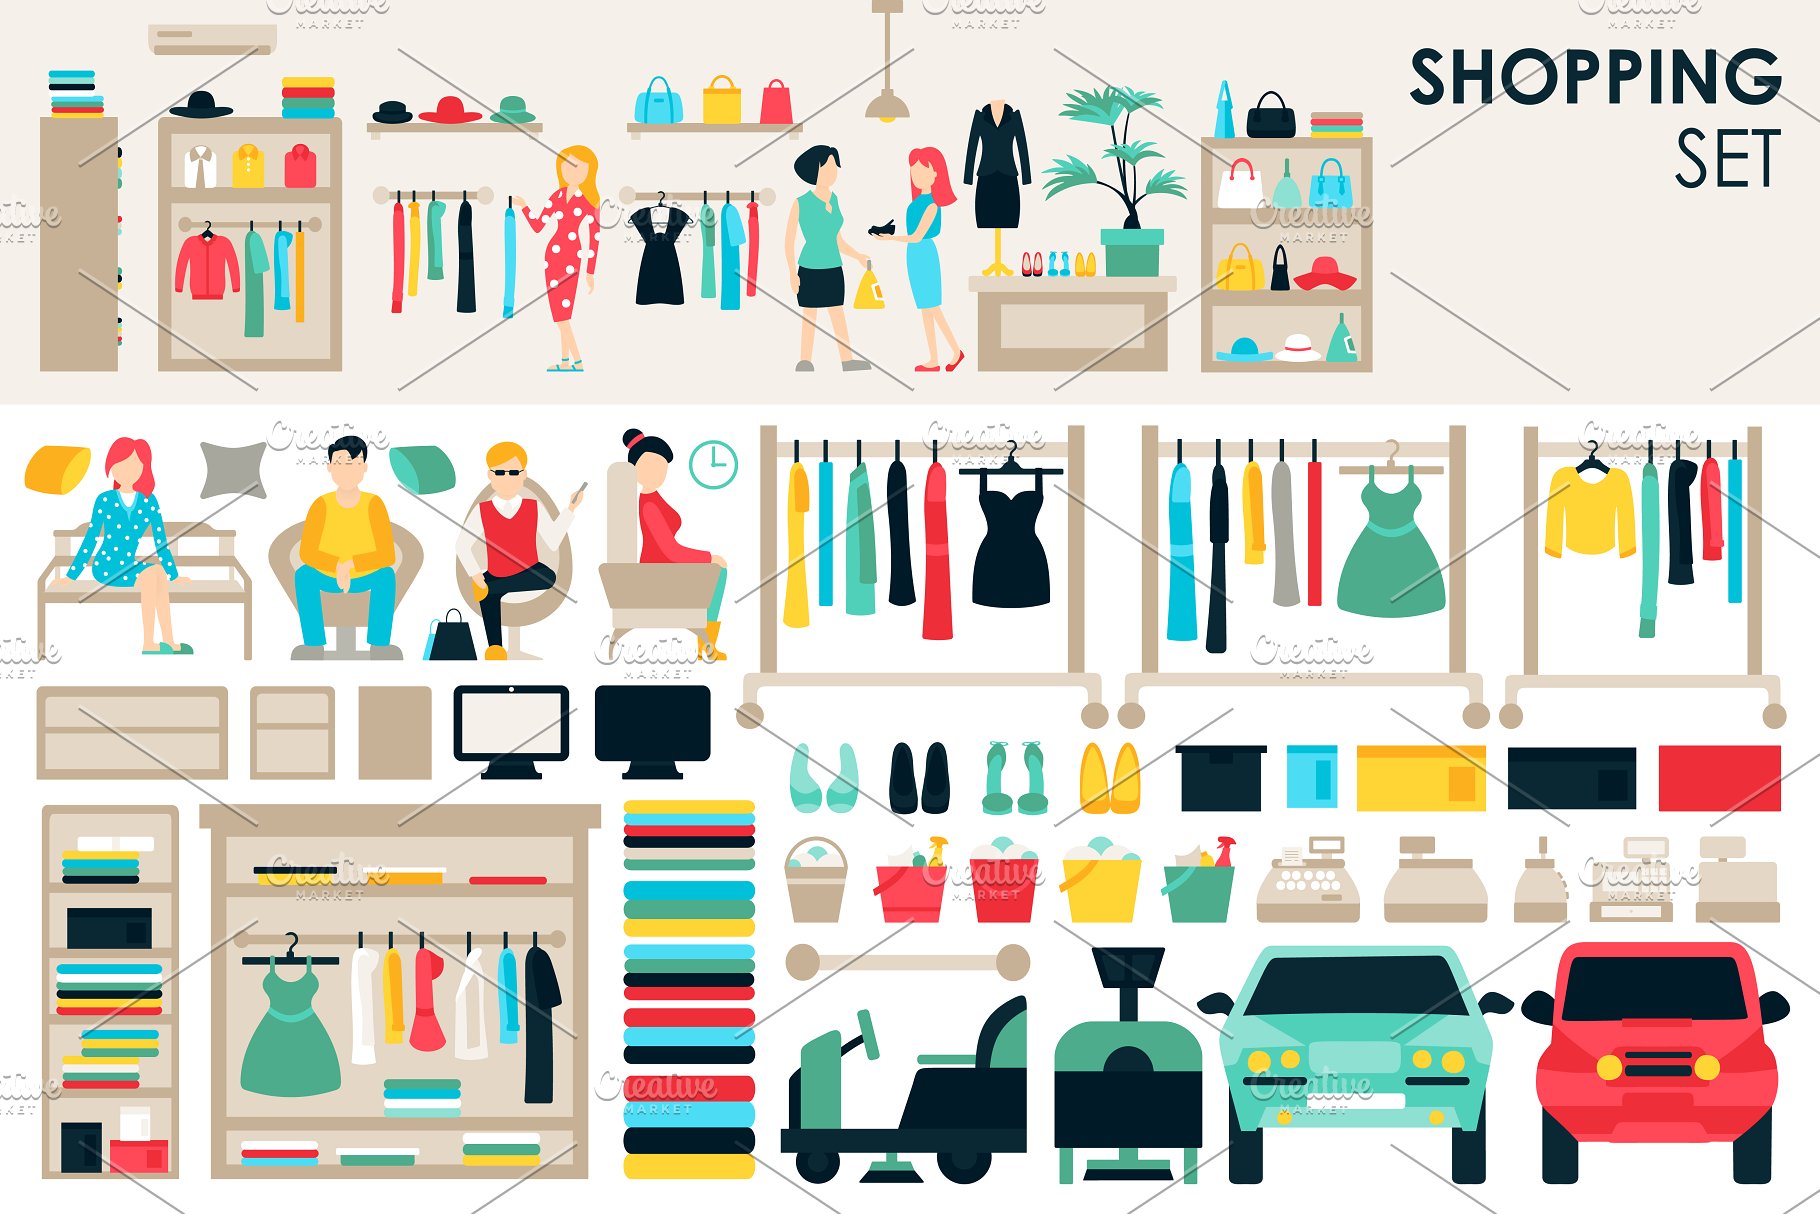 扁平风格购物设计元素合集 Shopping Flat Objects 9 collections插图